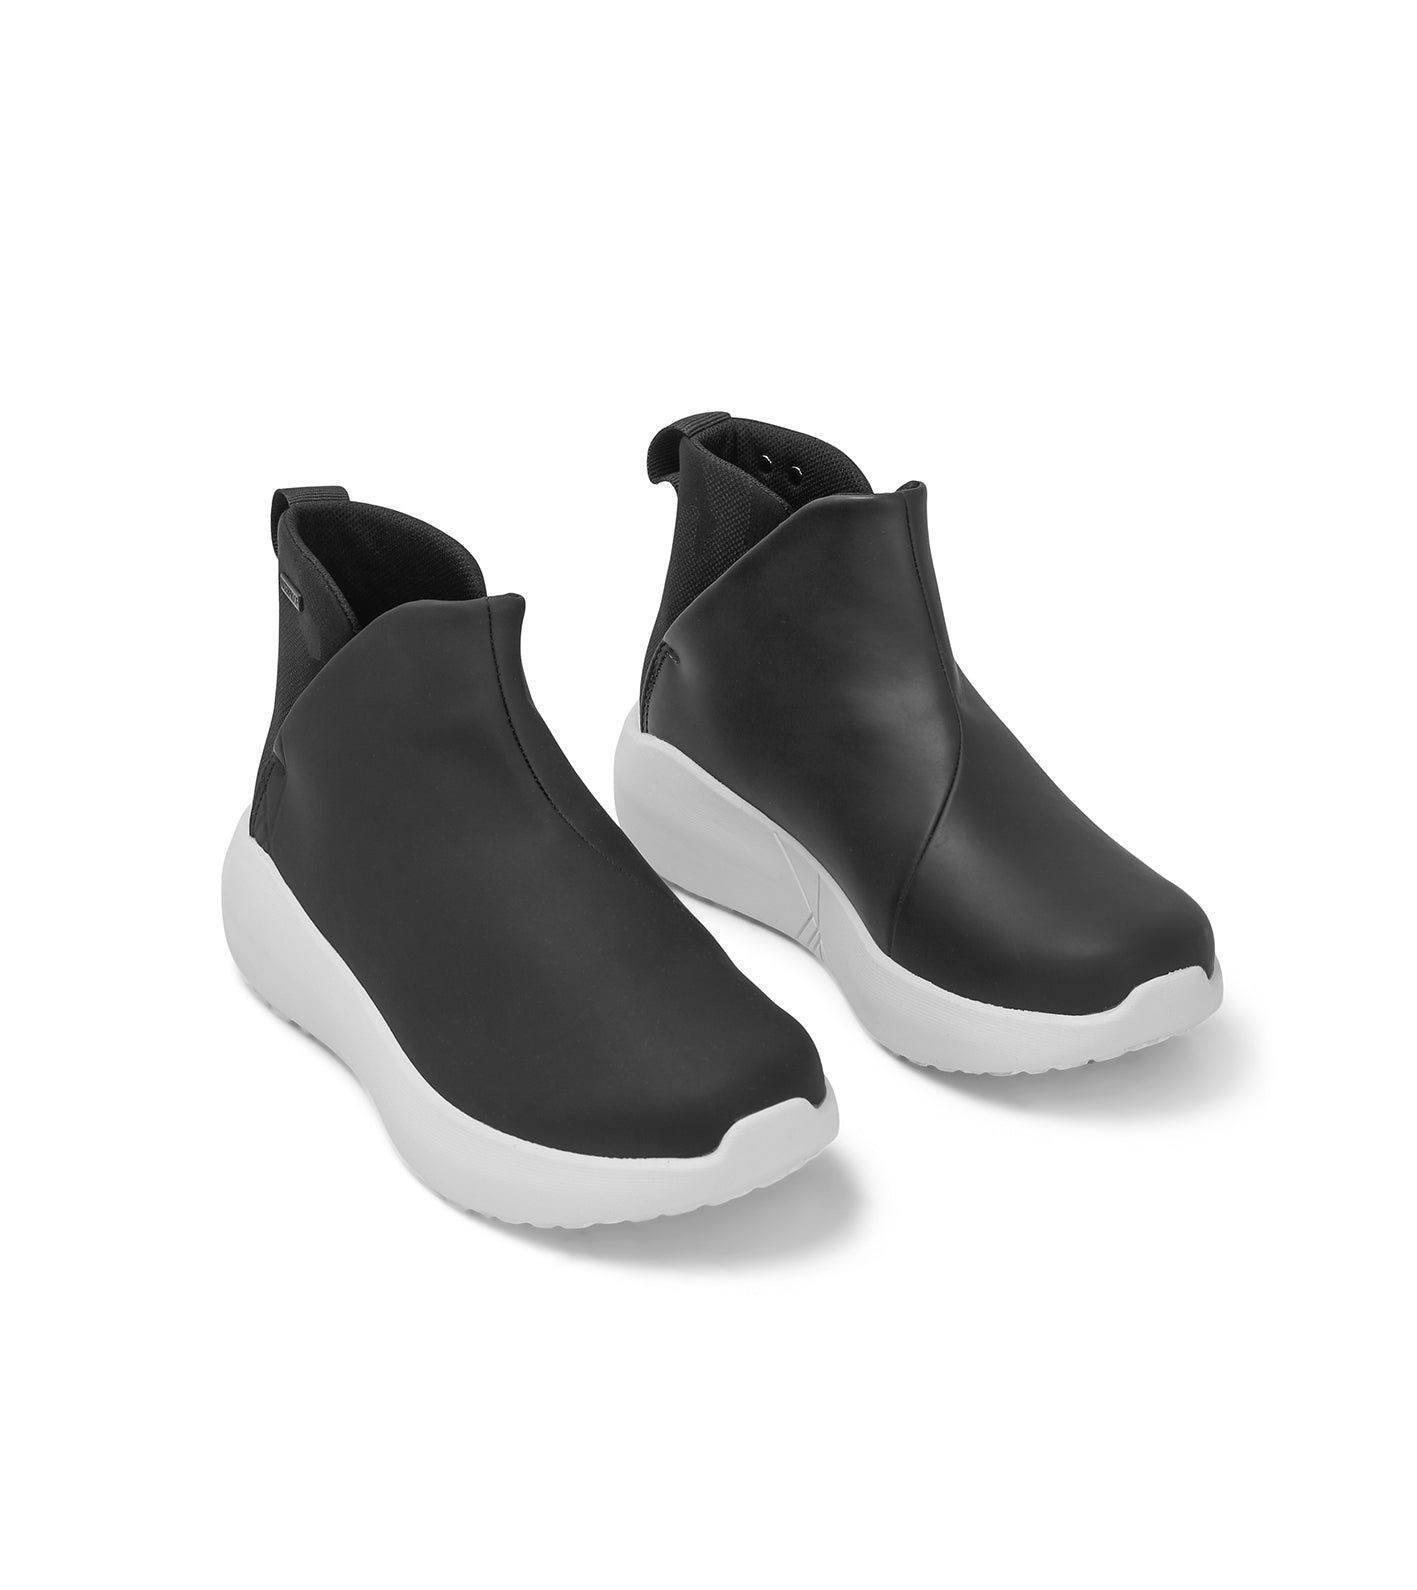 Kastel Shoes Roros Terrain WP Coal Black Vanntette Gummistøvler med Klassisk Design og Terrain Yttersåle